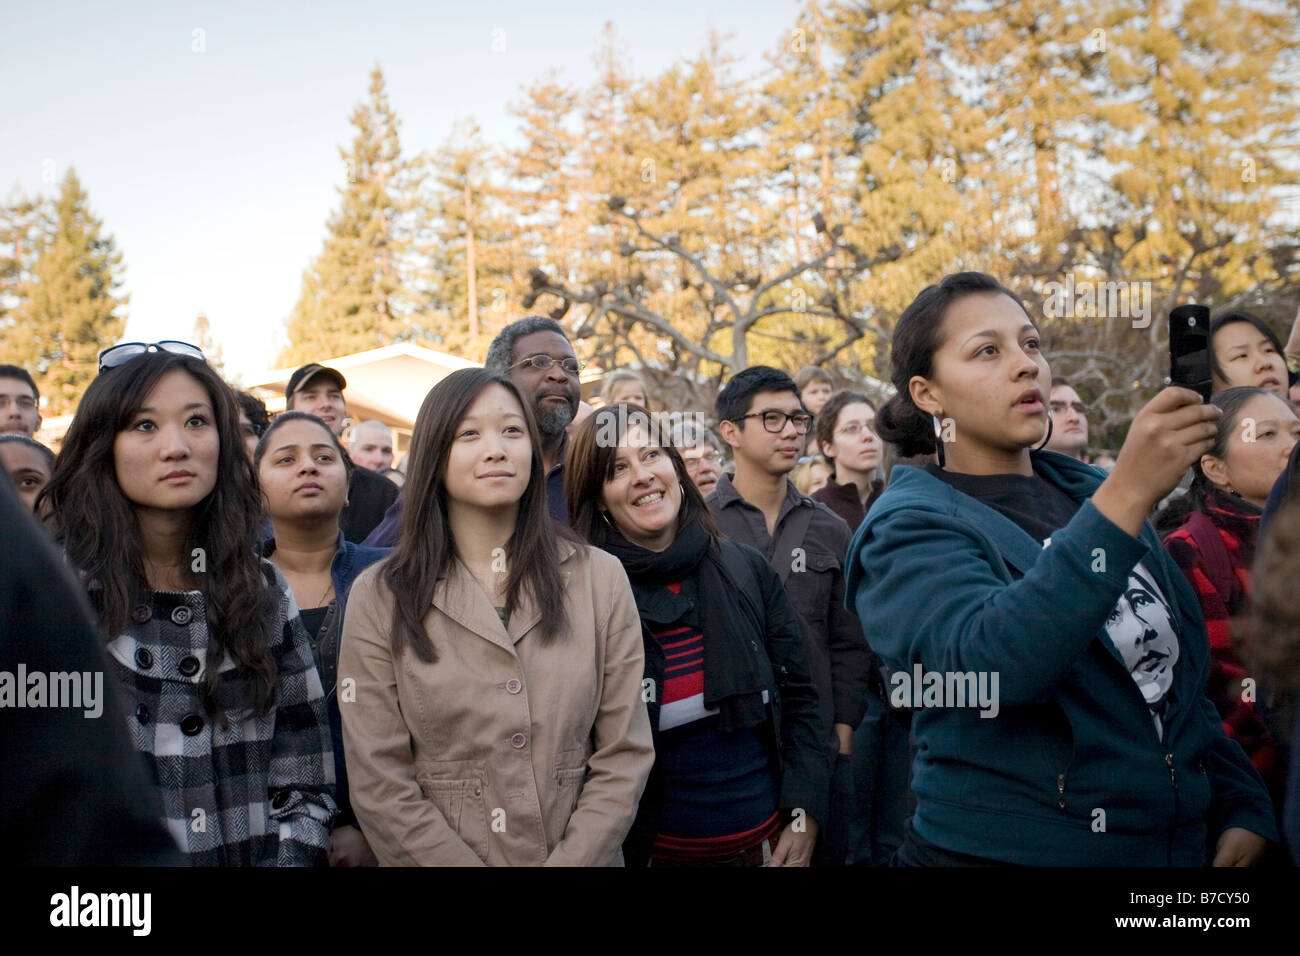 Une foule d'étudiants, professeurs, membres du personnel et les résidents des communautés avoisinantes regarder l'investiture de Barack Obama. Banque D'Images